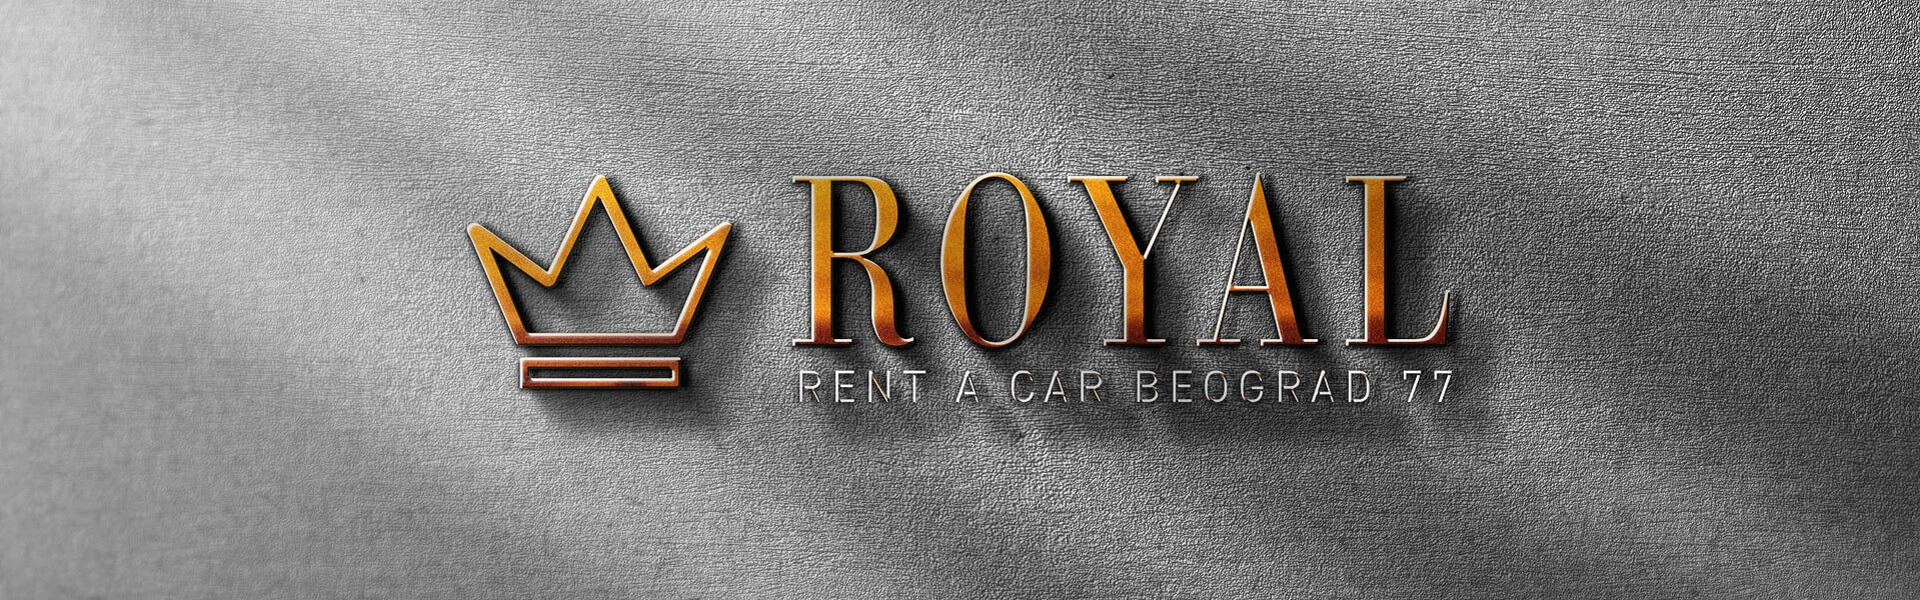 Car rental Belgrade Royal